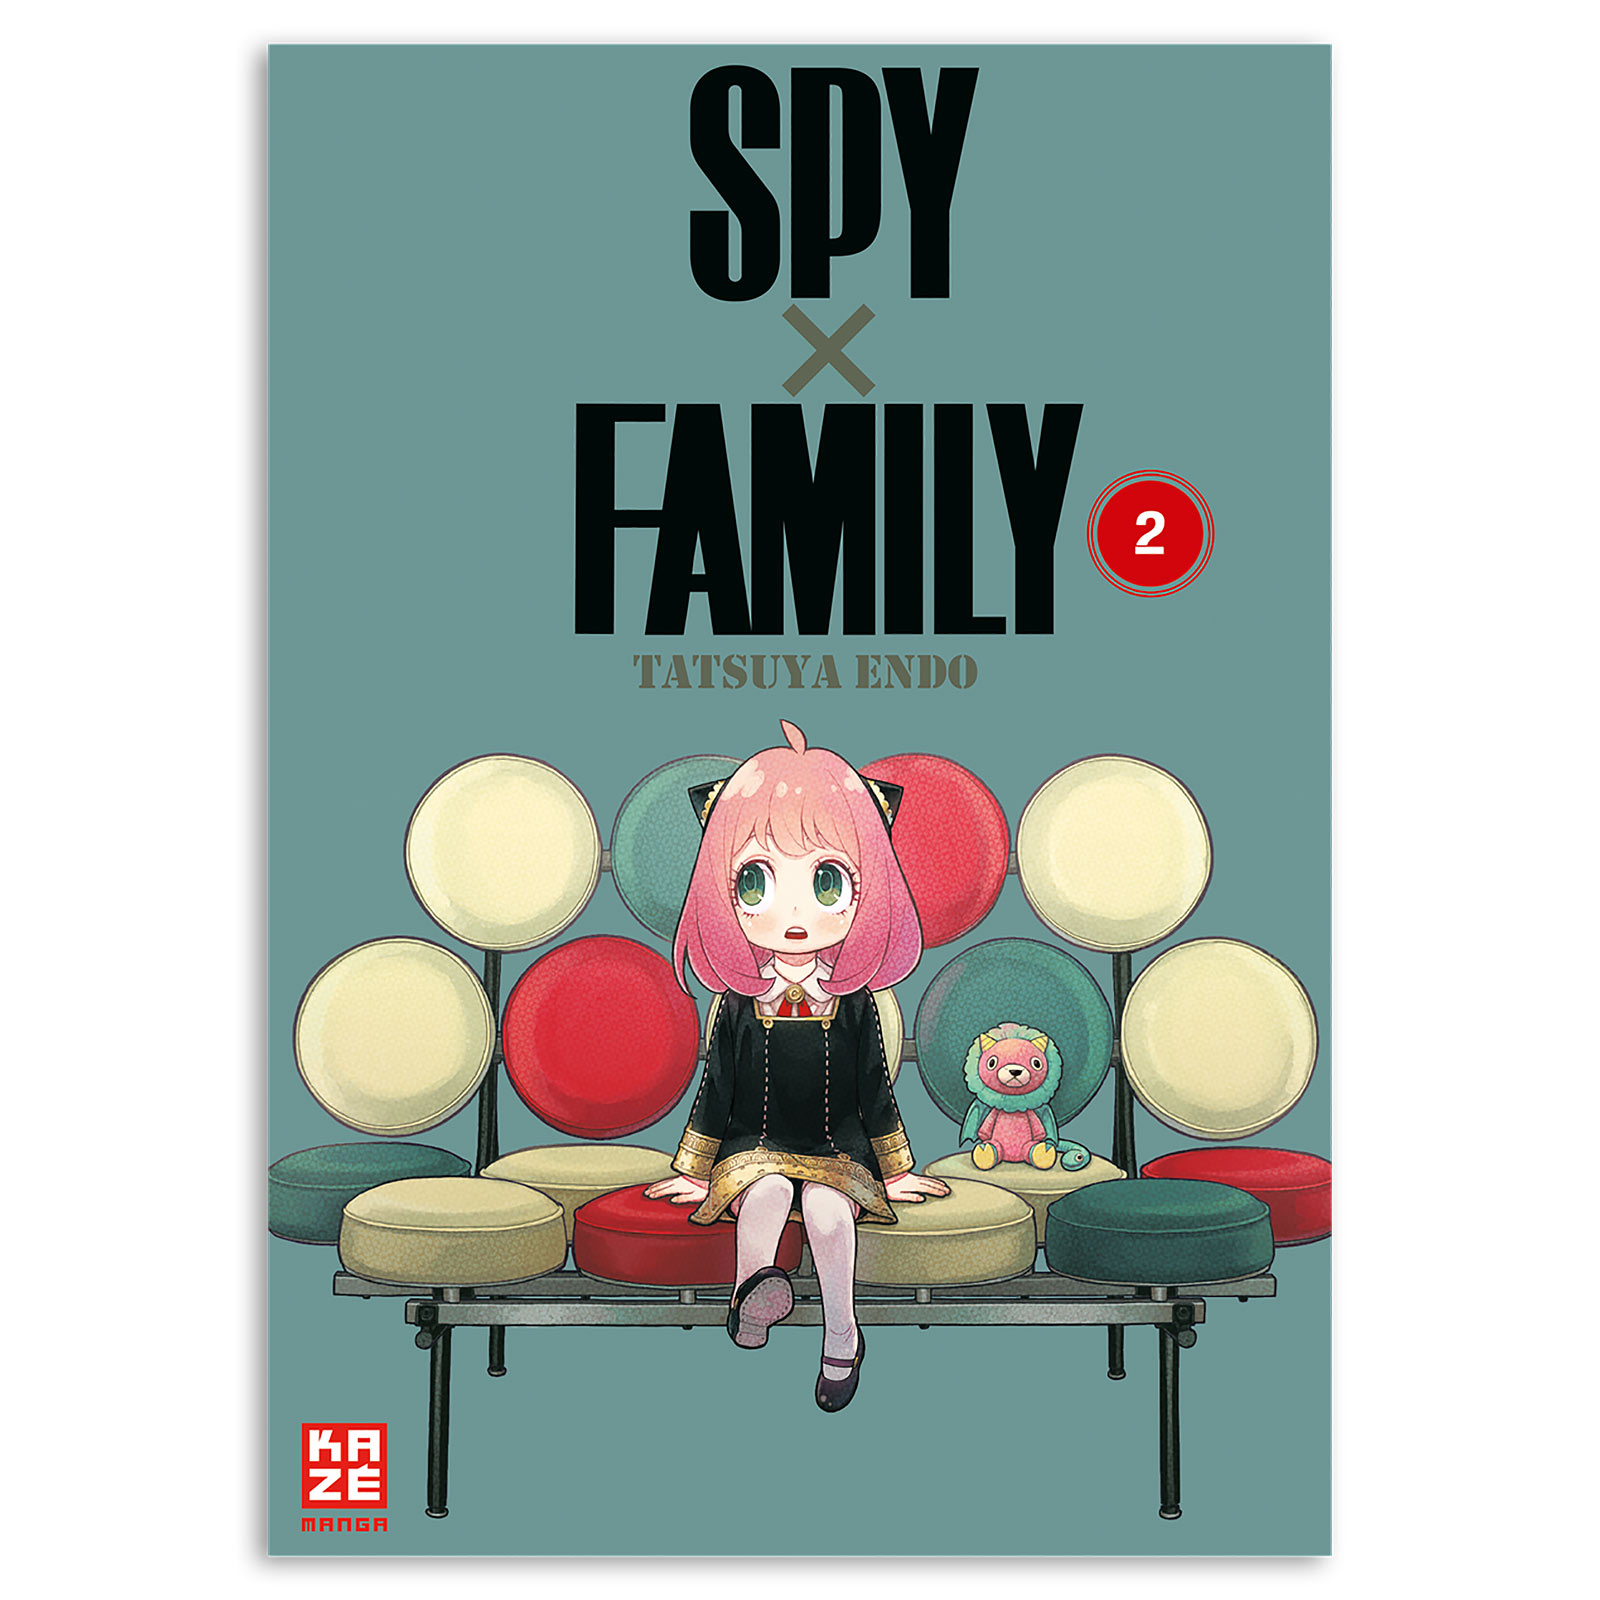 Spy x Family - Volume 2 Paperback